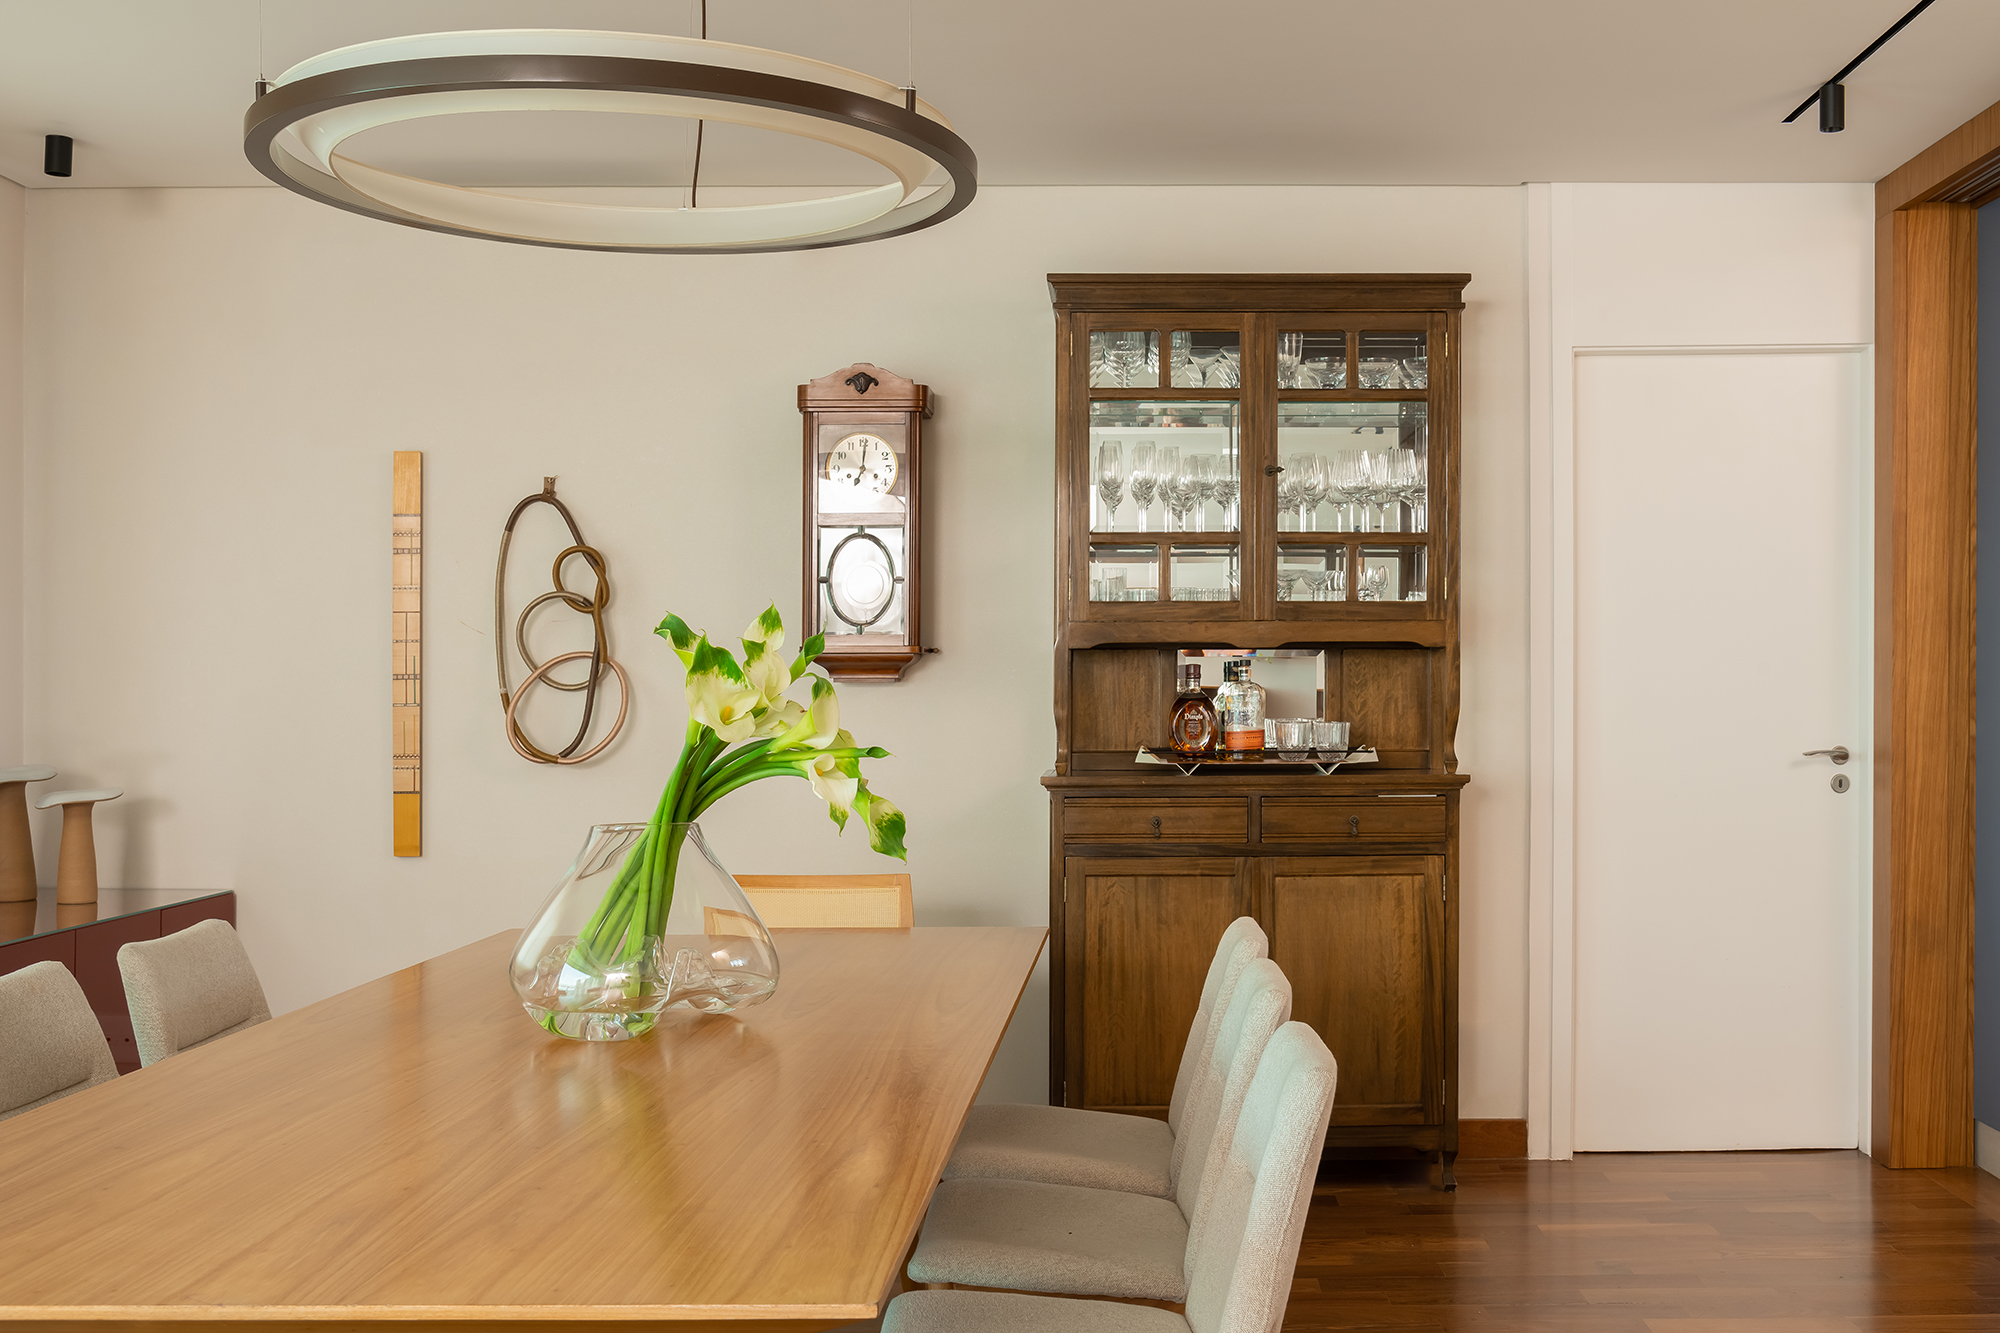 Apartamento de 188 m² ganha dois cooktops na cozinha e balanços na sala, Projeto Raízes Arquitetos. Na foto, sala de jantar com cristaleira e relógio antigo.